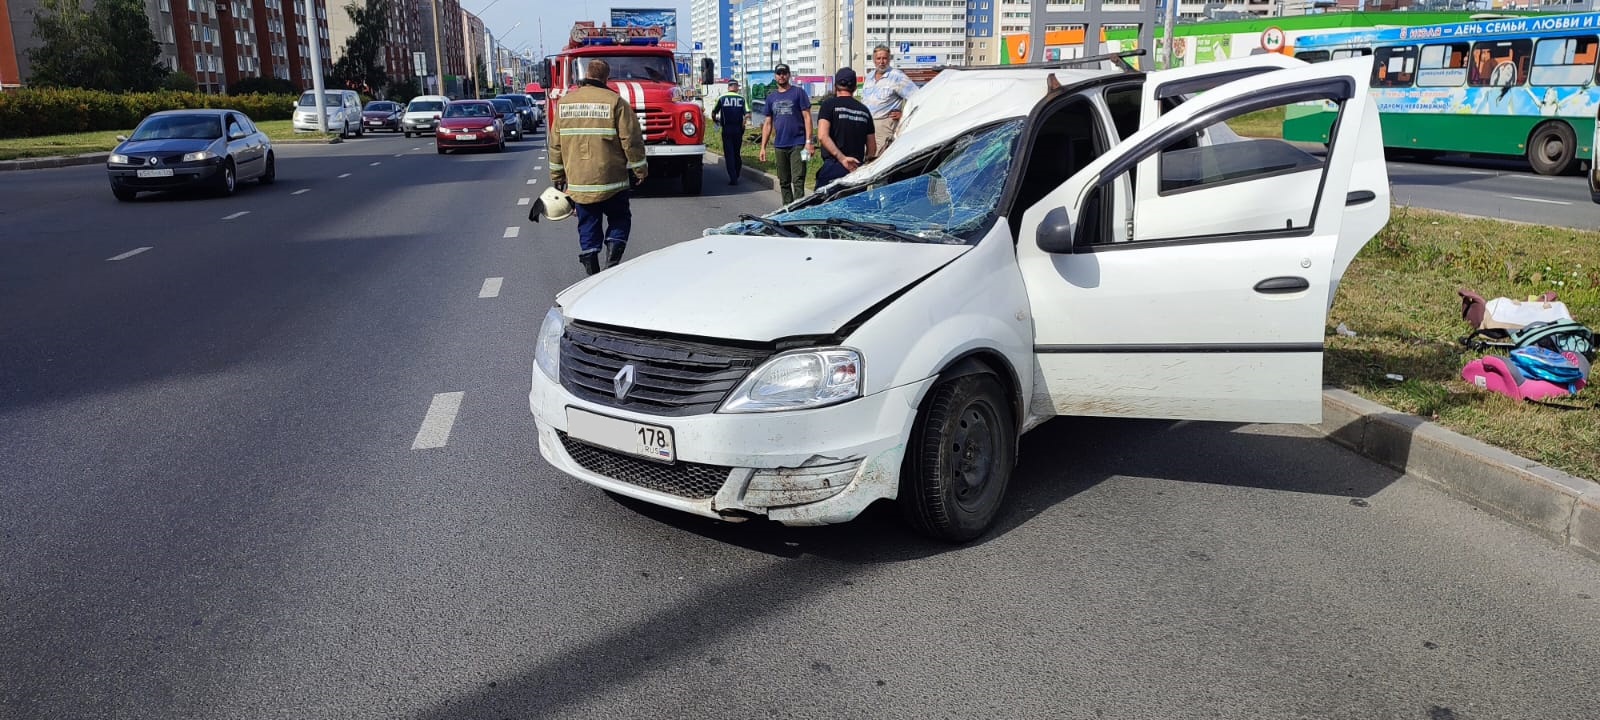 В Череповце мужчина и двое детей пострадали в ДТП на Октябрьском проспекте